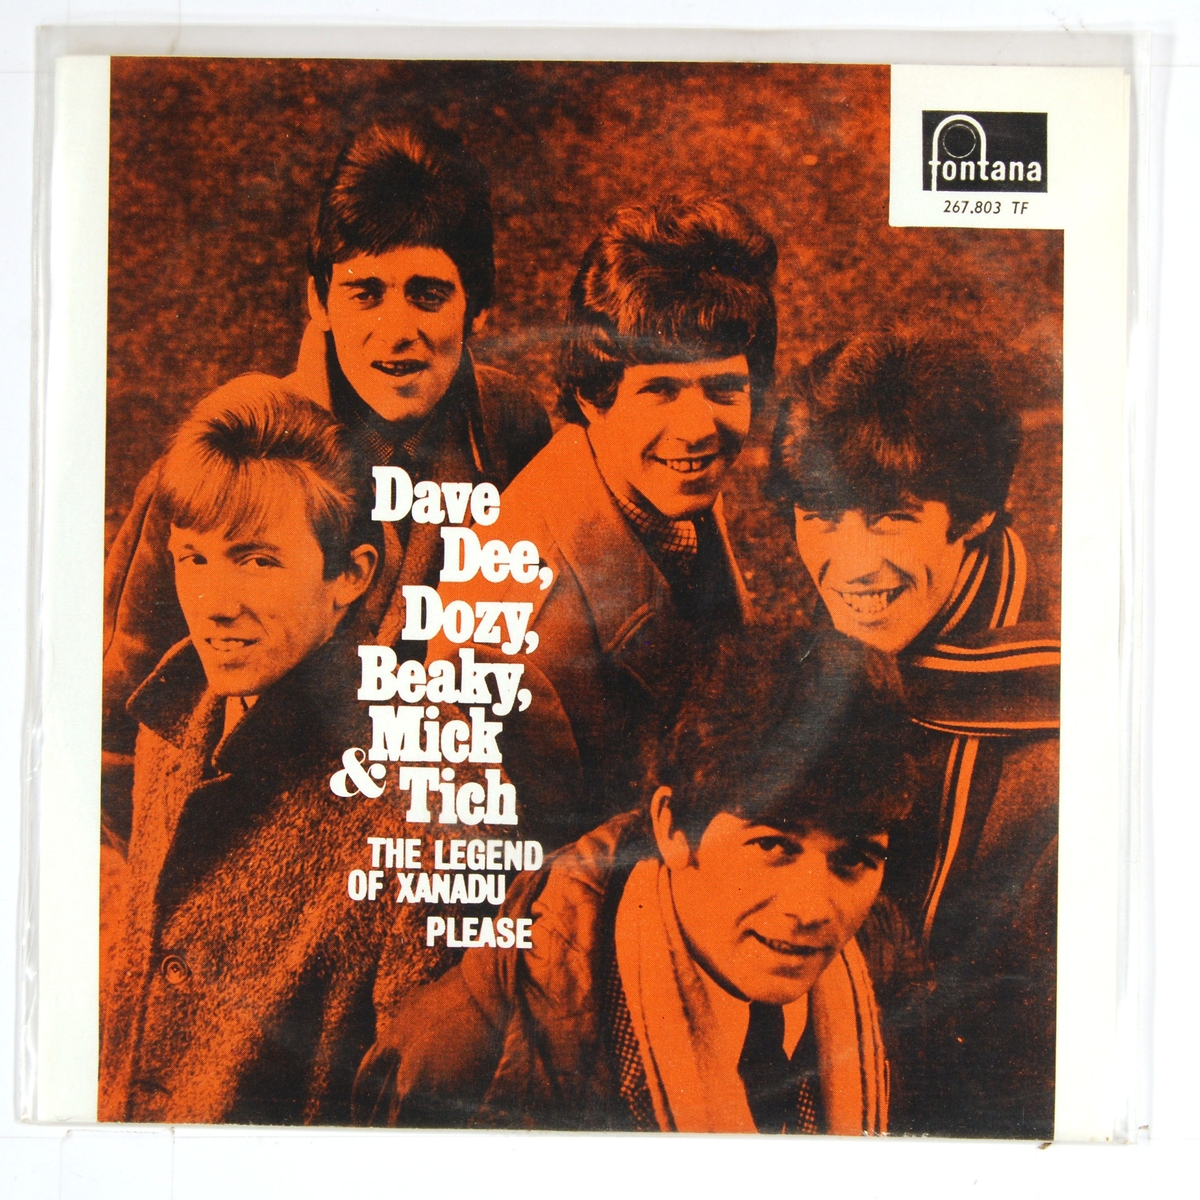 Bilde av medlemmene i "Dave Dee, Dozy, Beaky, Mick & Tich".